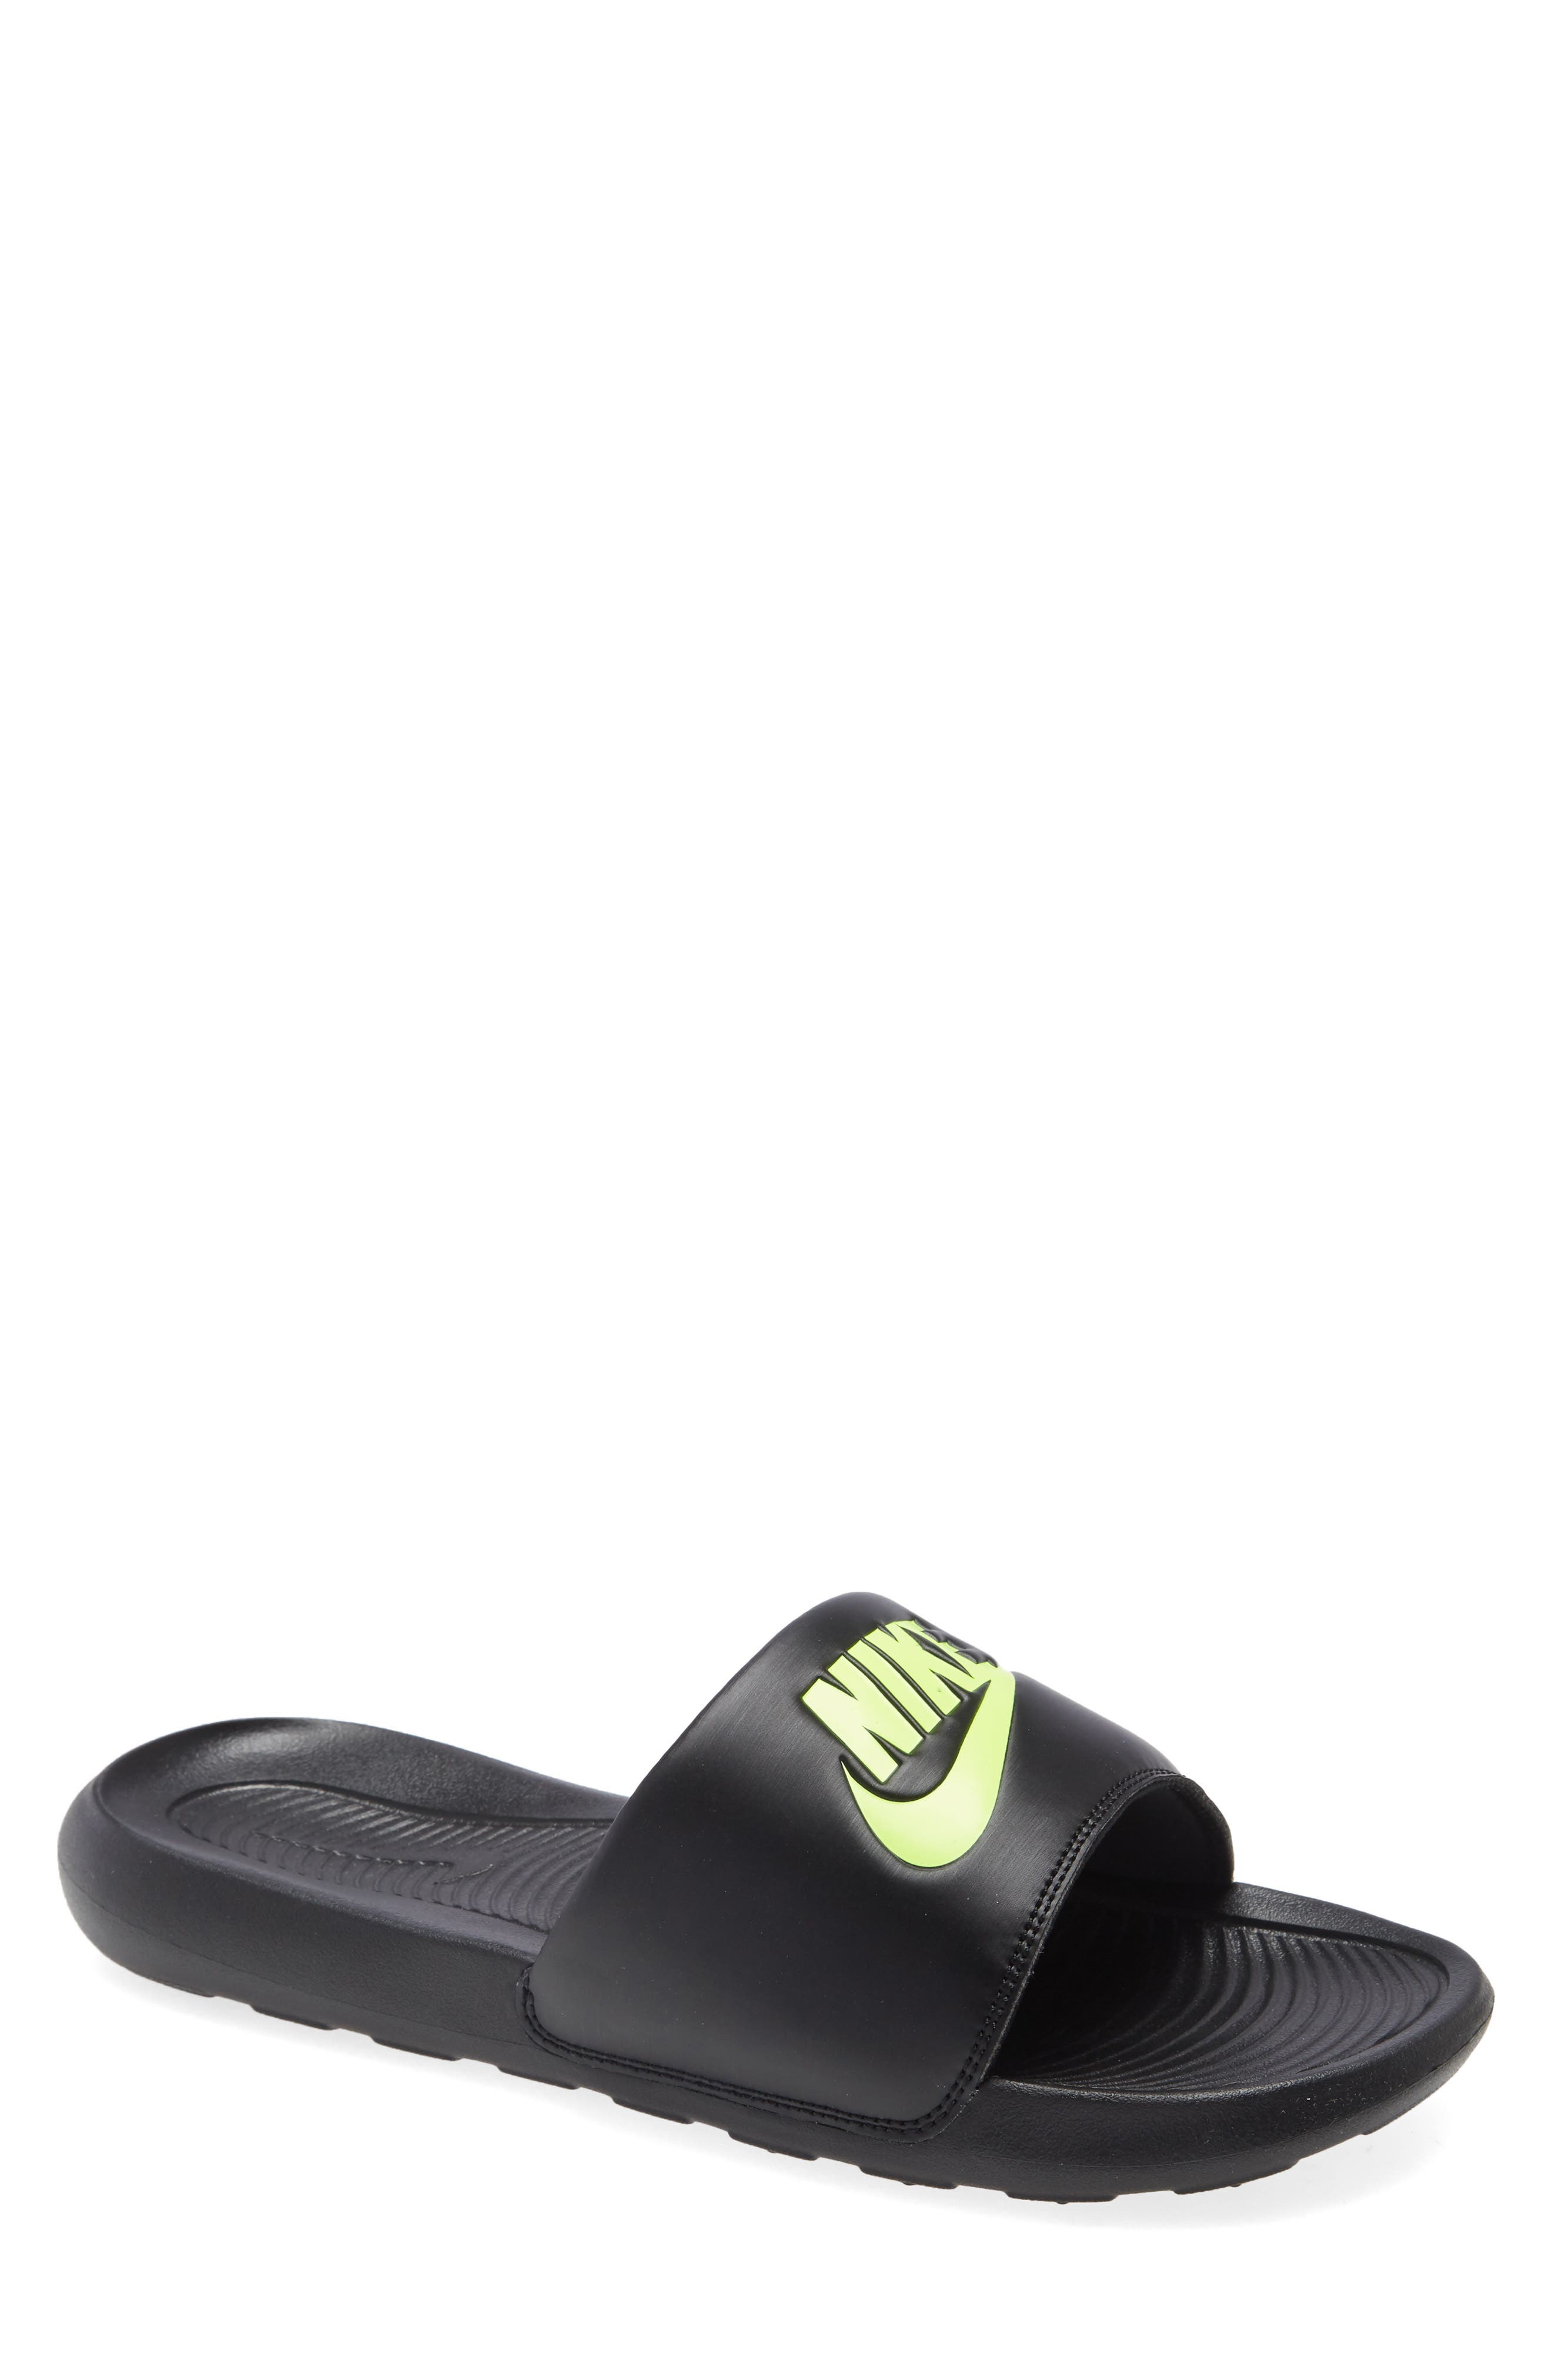 Nike Flip-Flops \u0026 Slides for Men 